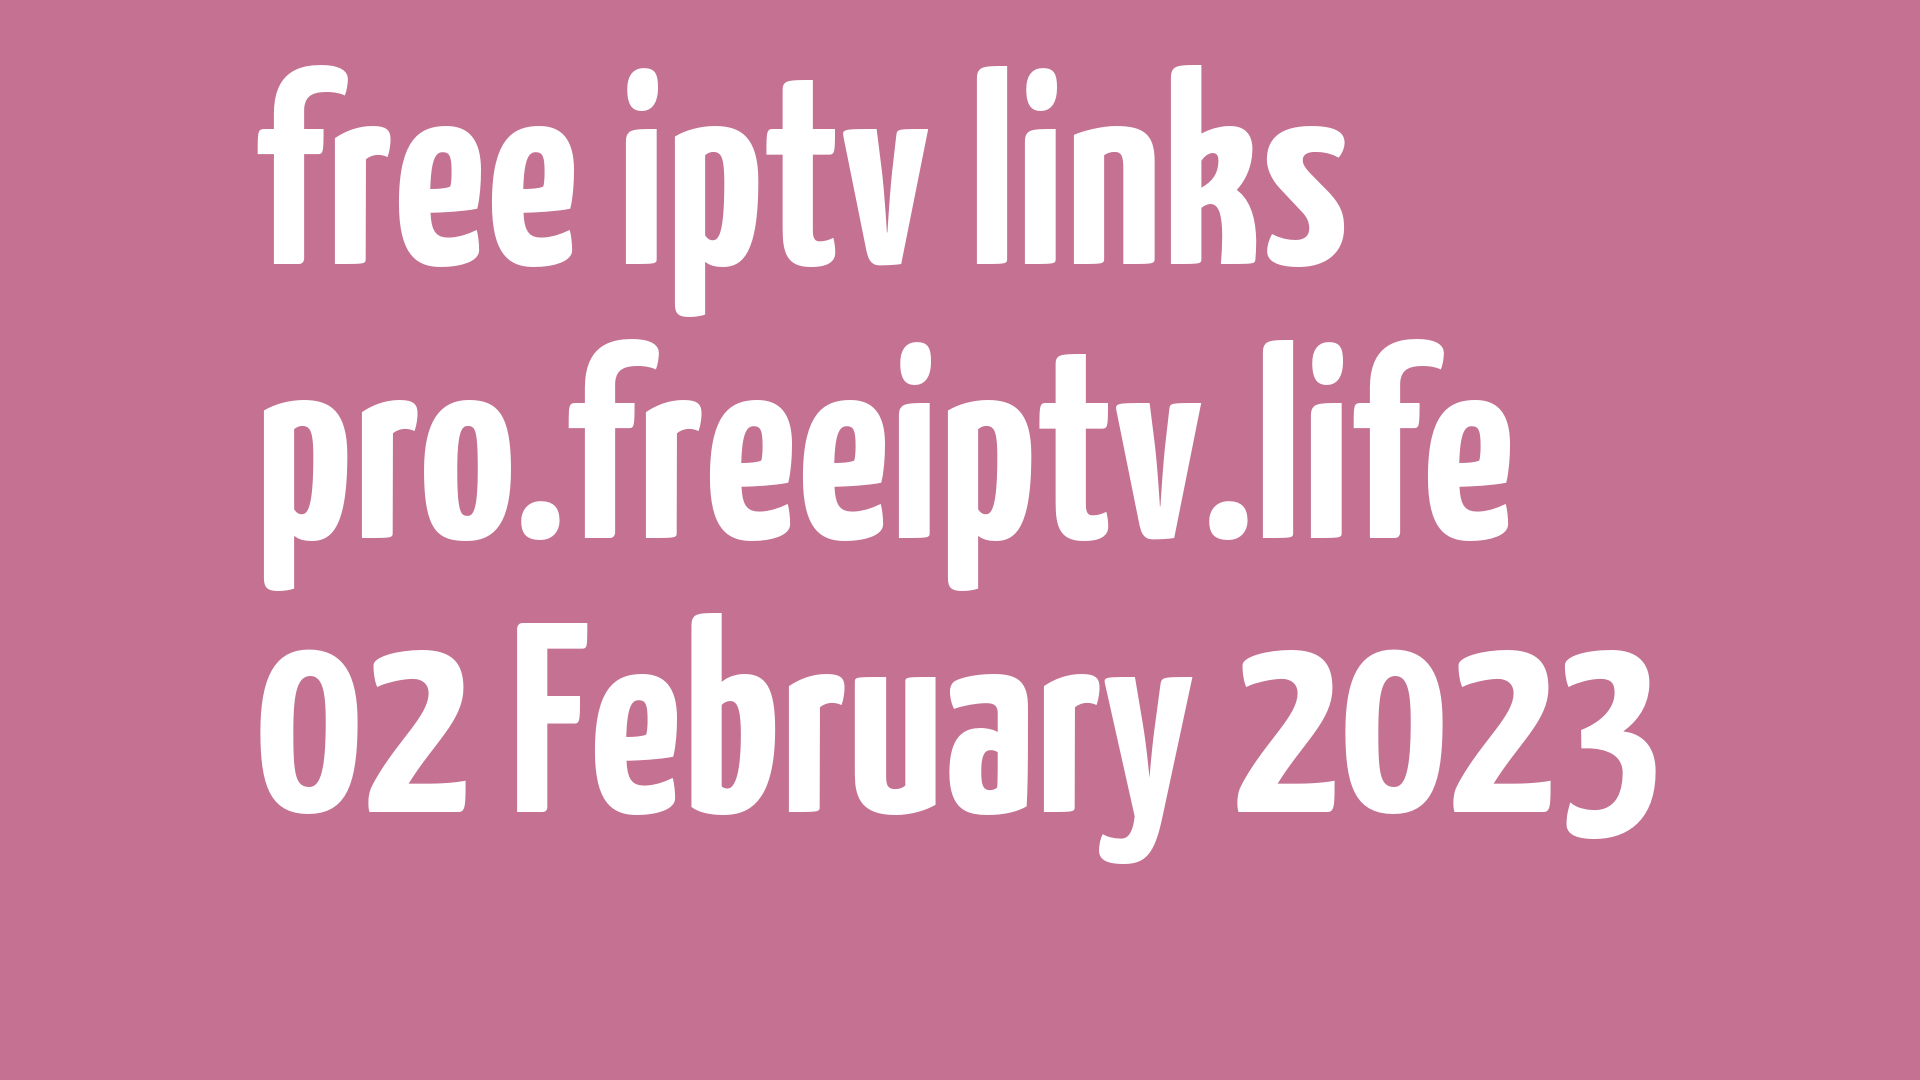 free iptv links 010223